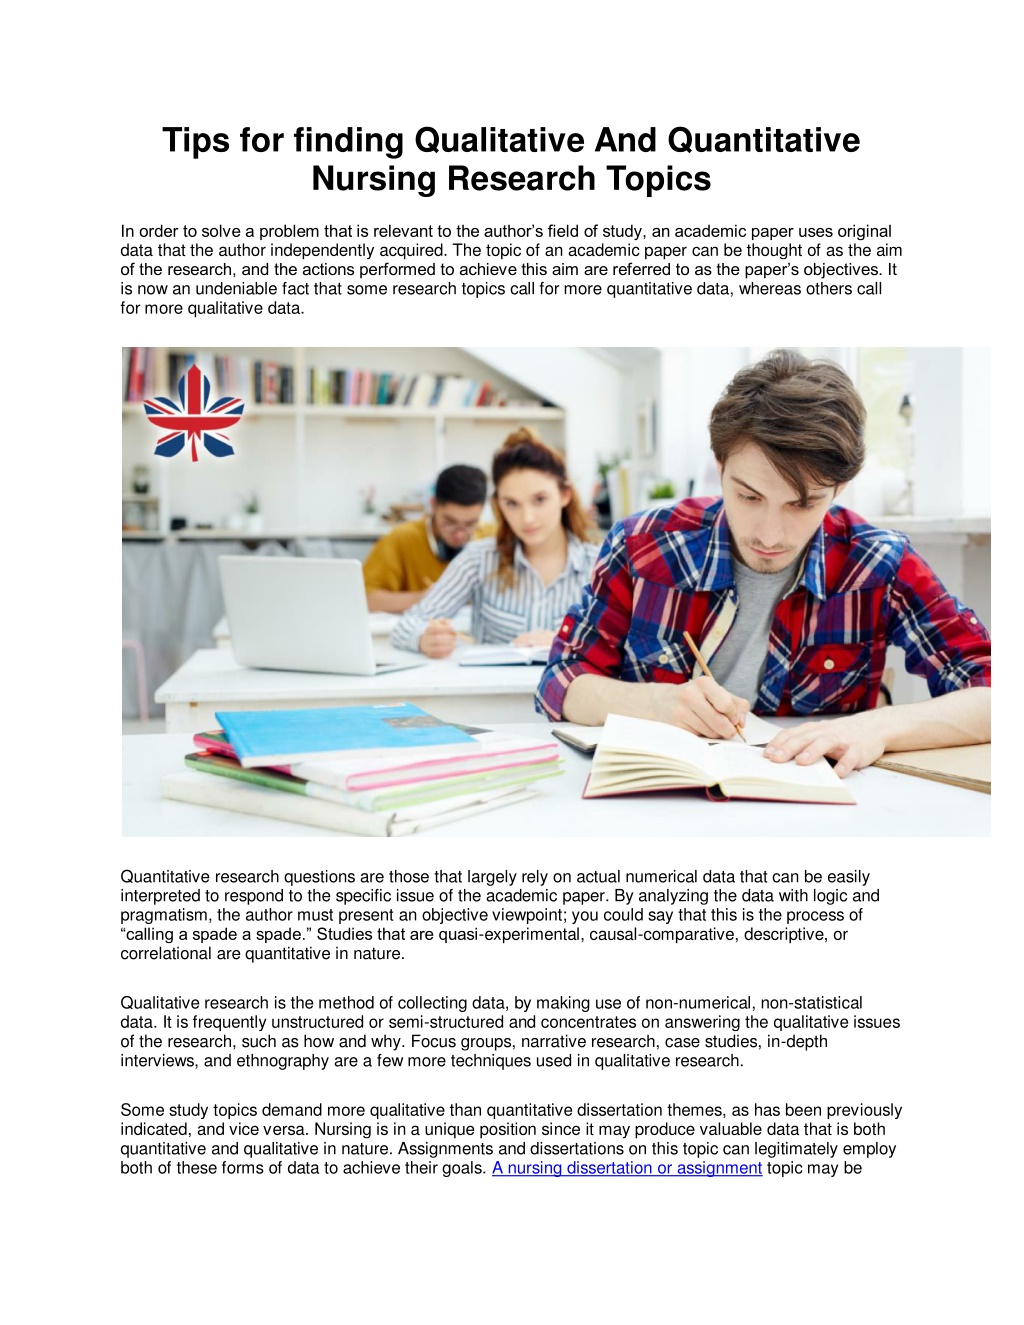 qualitative and quantitative nursing research topics